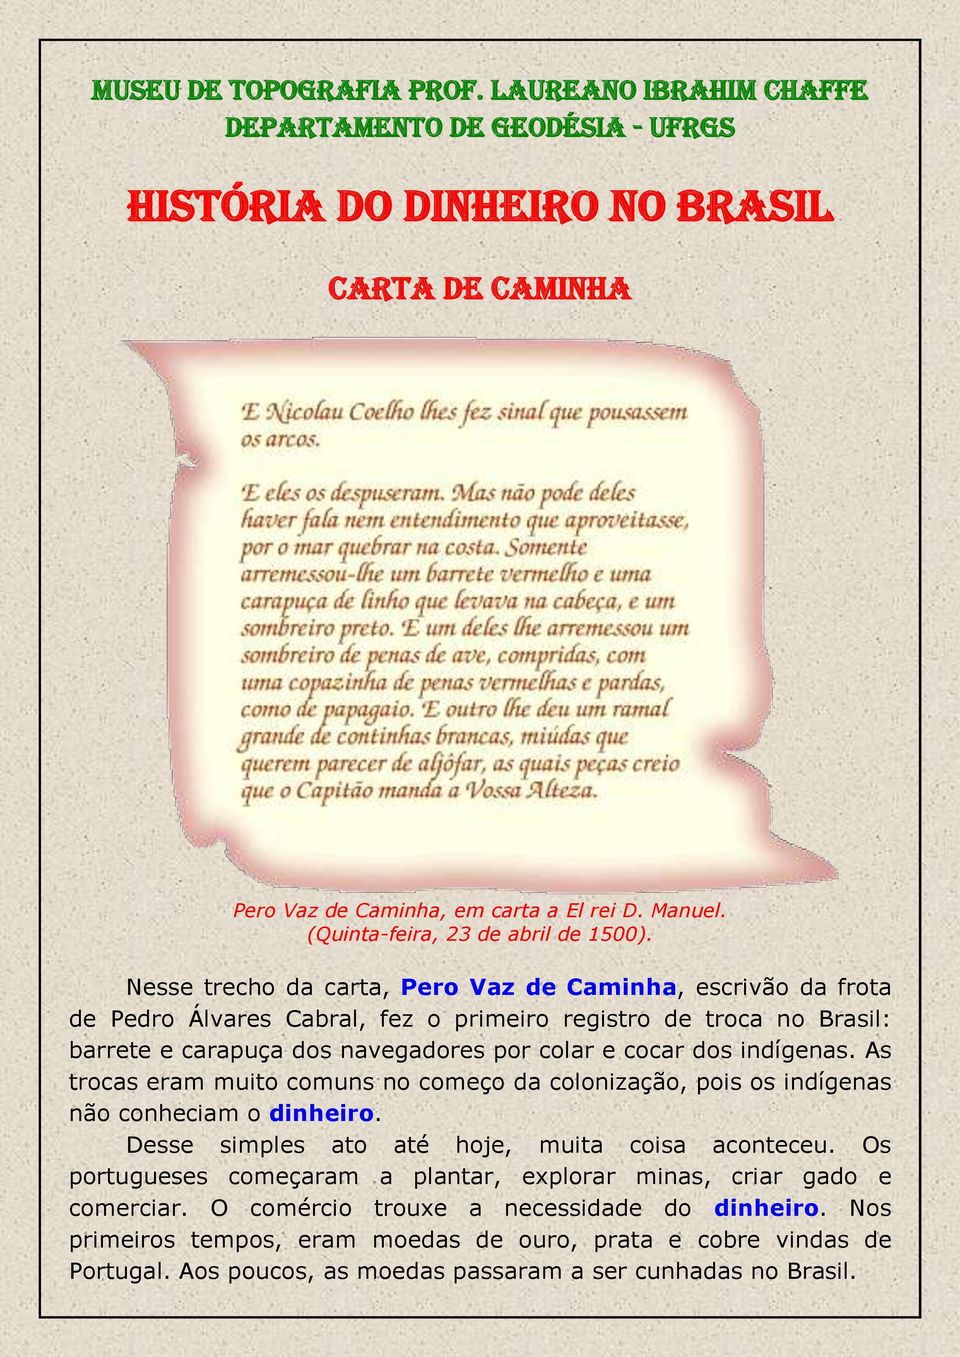 Nesse trecho da carta, Pero Vaz de Caminha, escrivão da frota de Pedro Álvares Cabral, fez o primeiro registro de troca no Brasil: barrete e carapuça dos navegadores por colar e cocar dos indígenas.